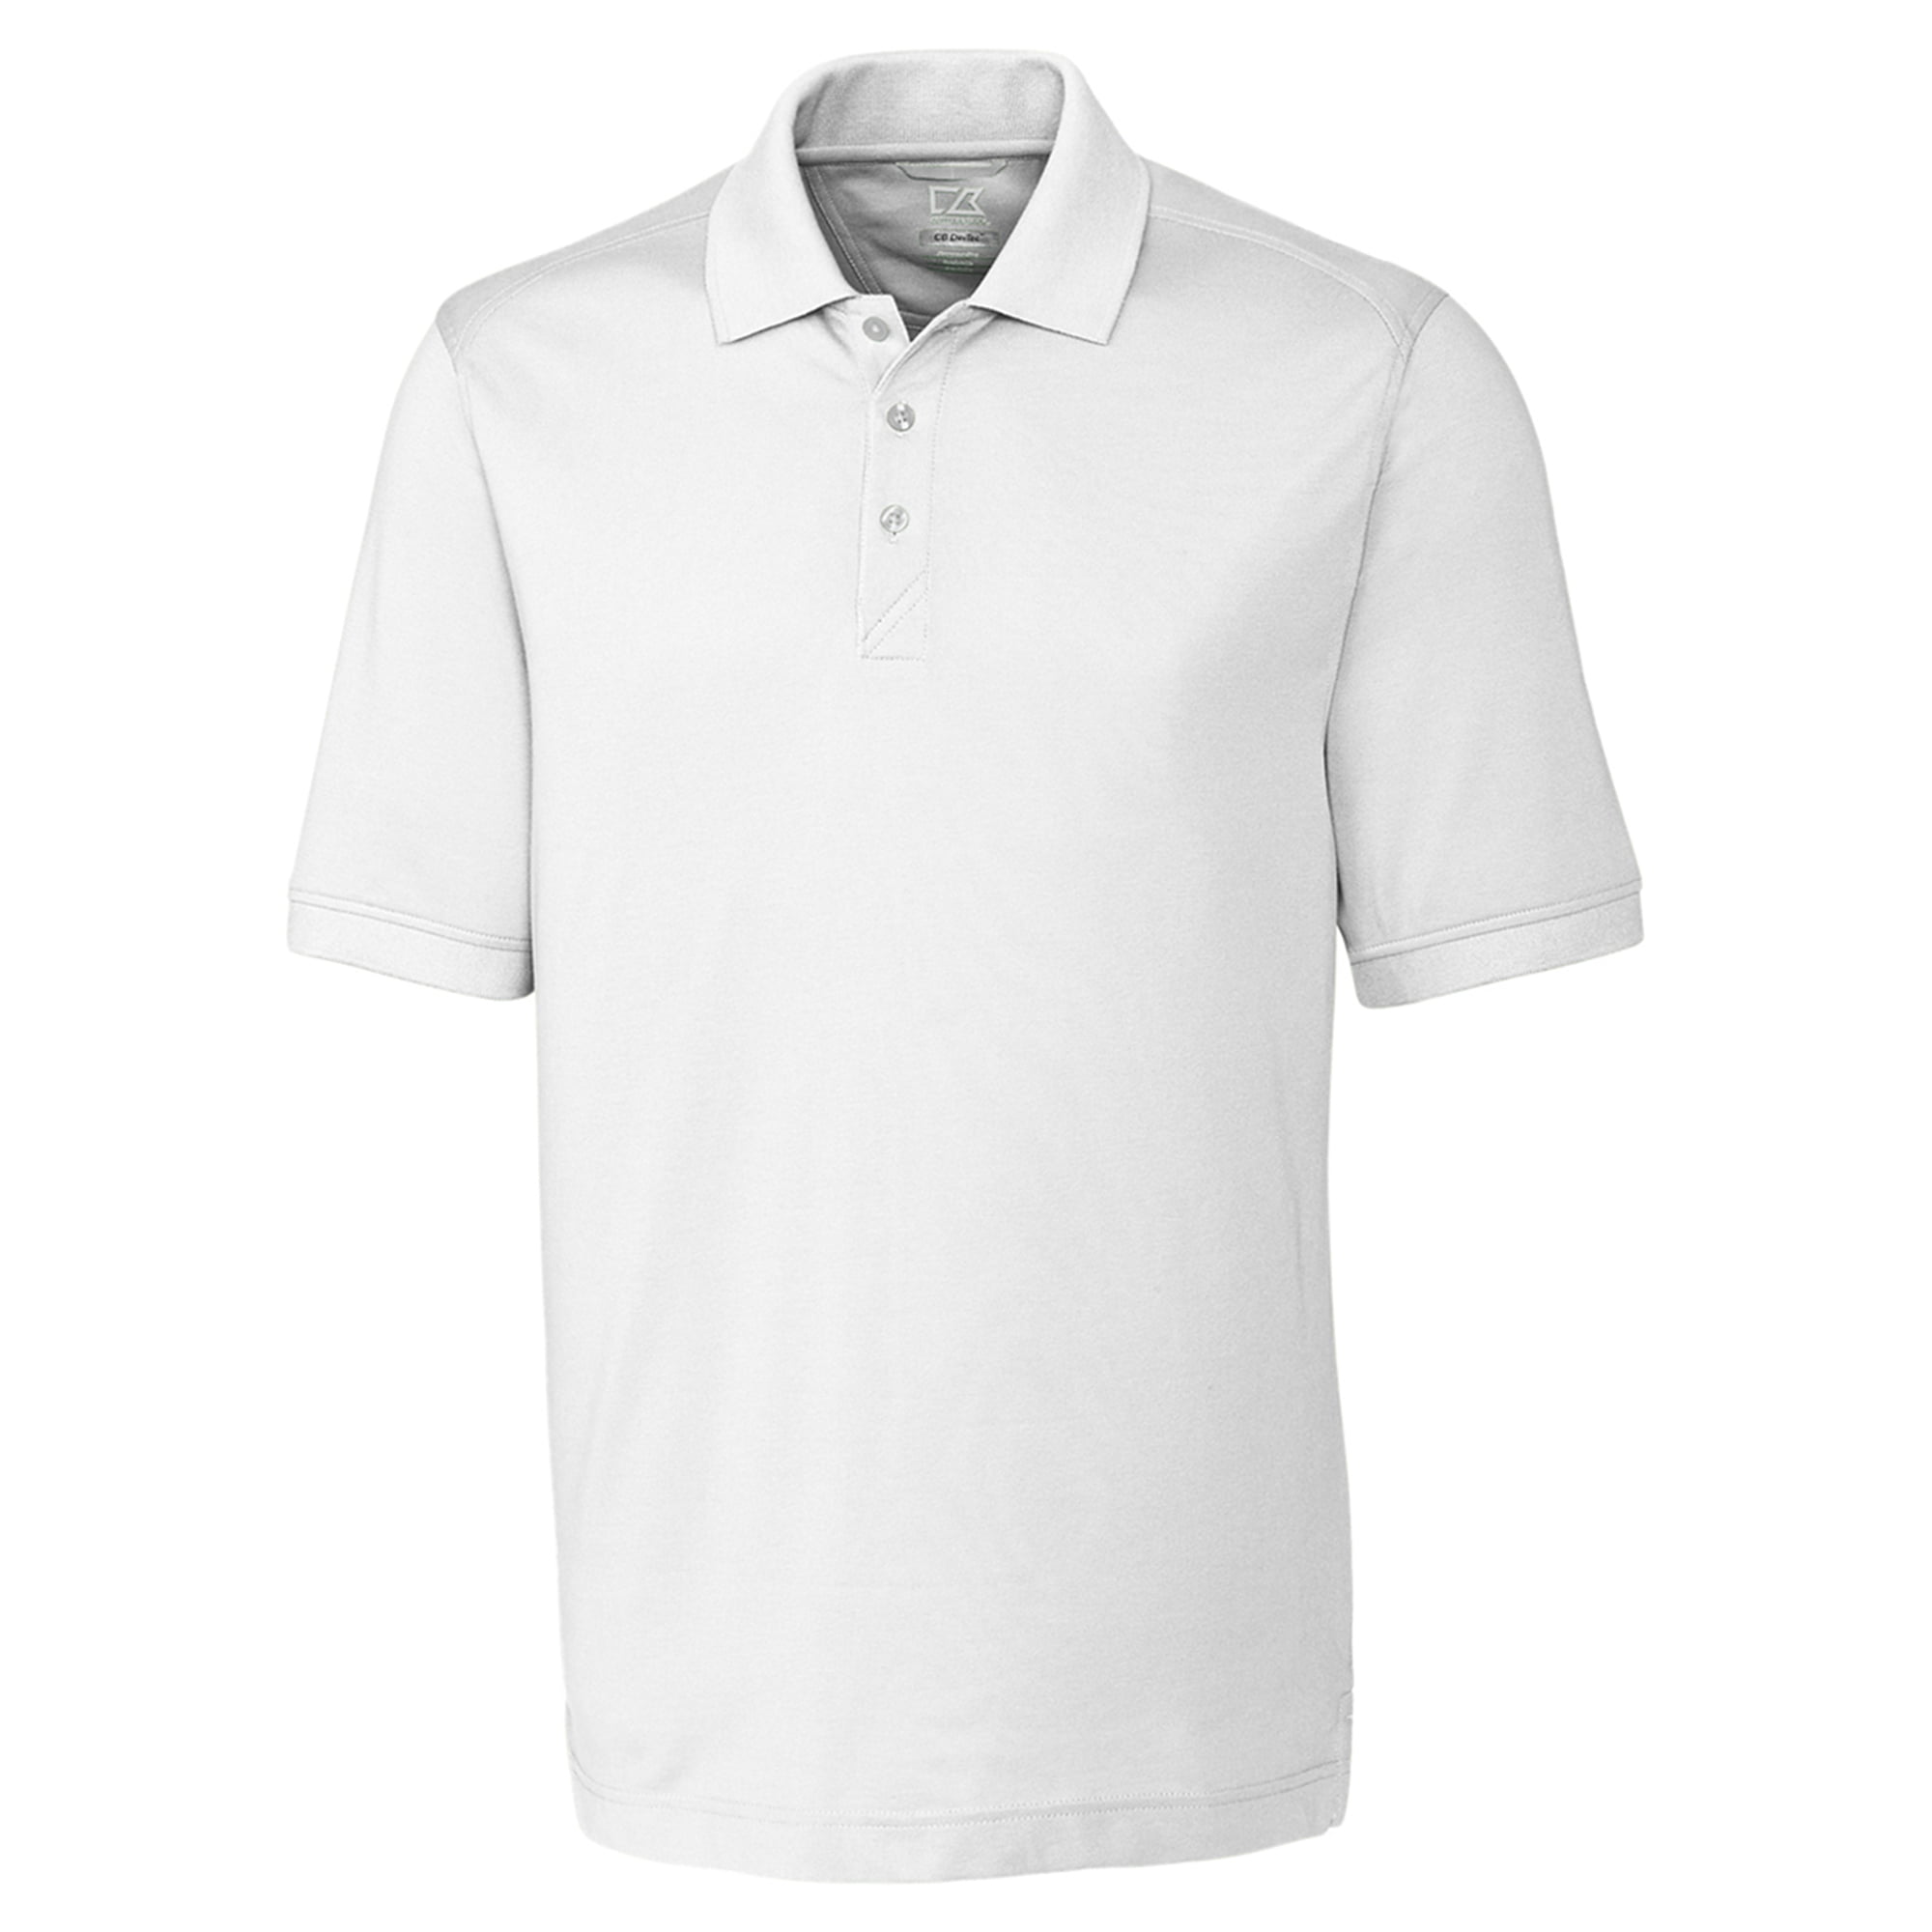 Cutter & Buck - Cutter & Buck Men's Short Sleeve Sport Polo Shirt ...